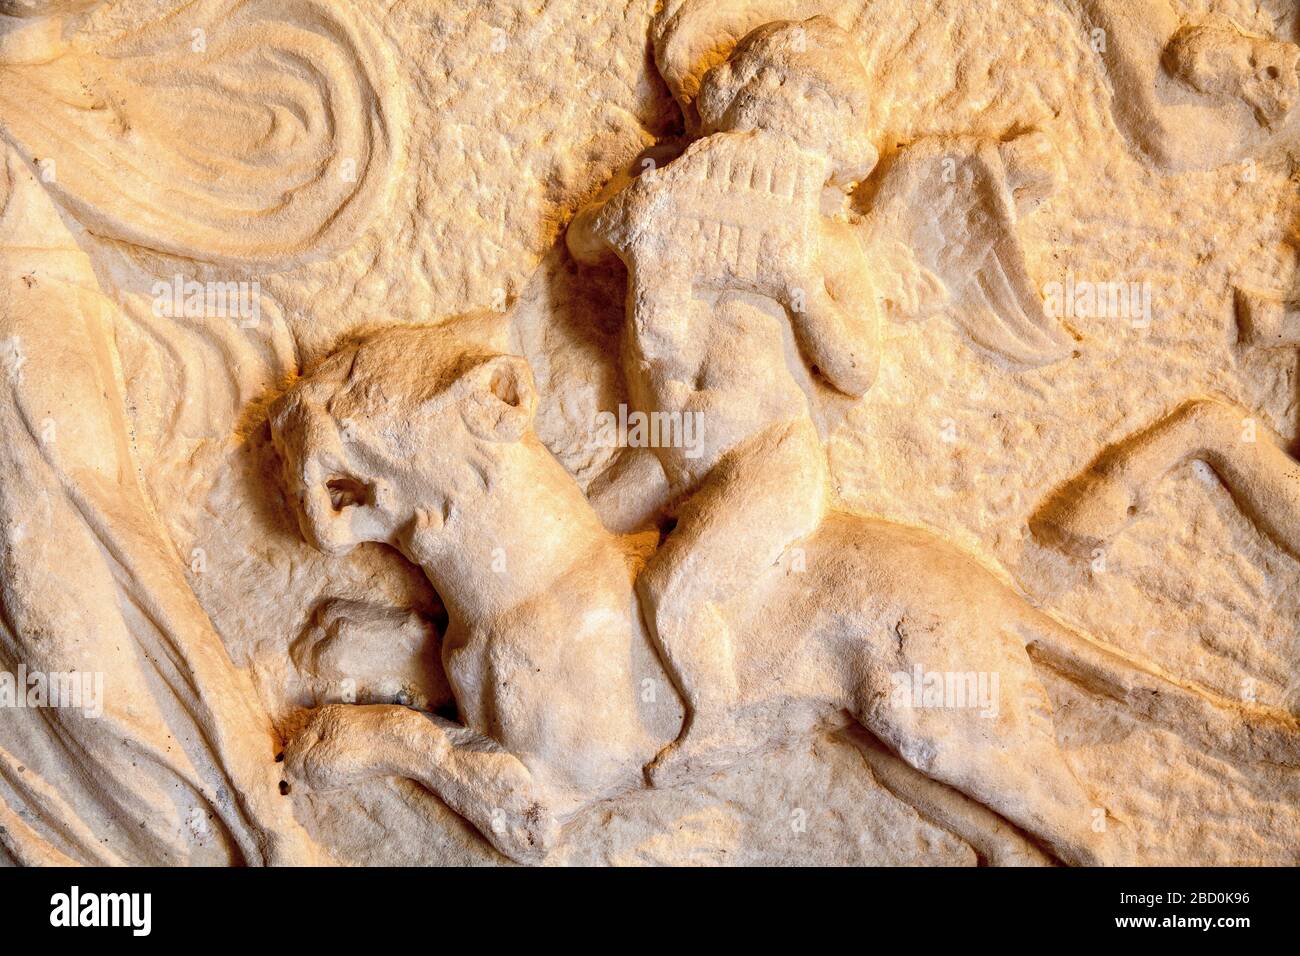 dionysos festivities reliefs, Pamukkale, Hierapolis, Turkey. Stock Photo